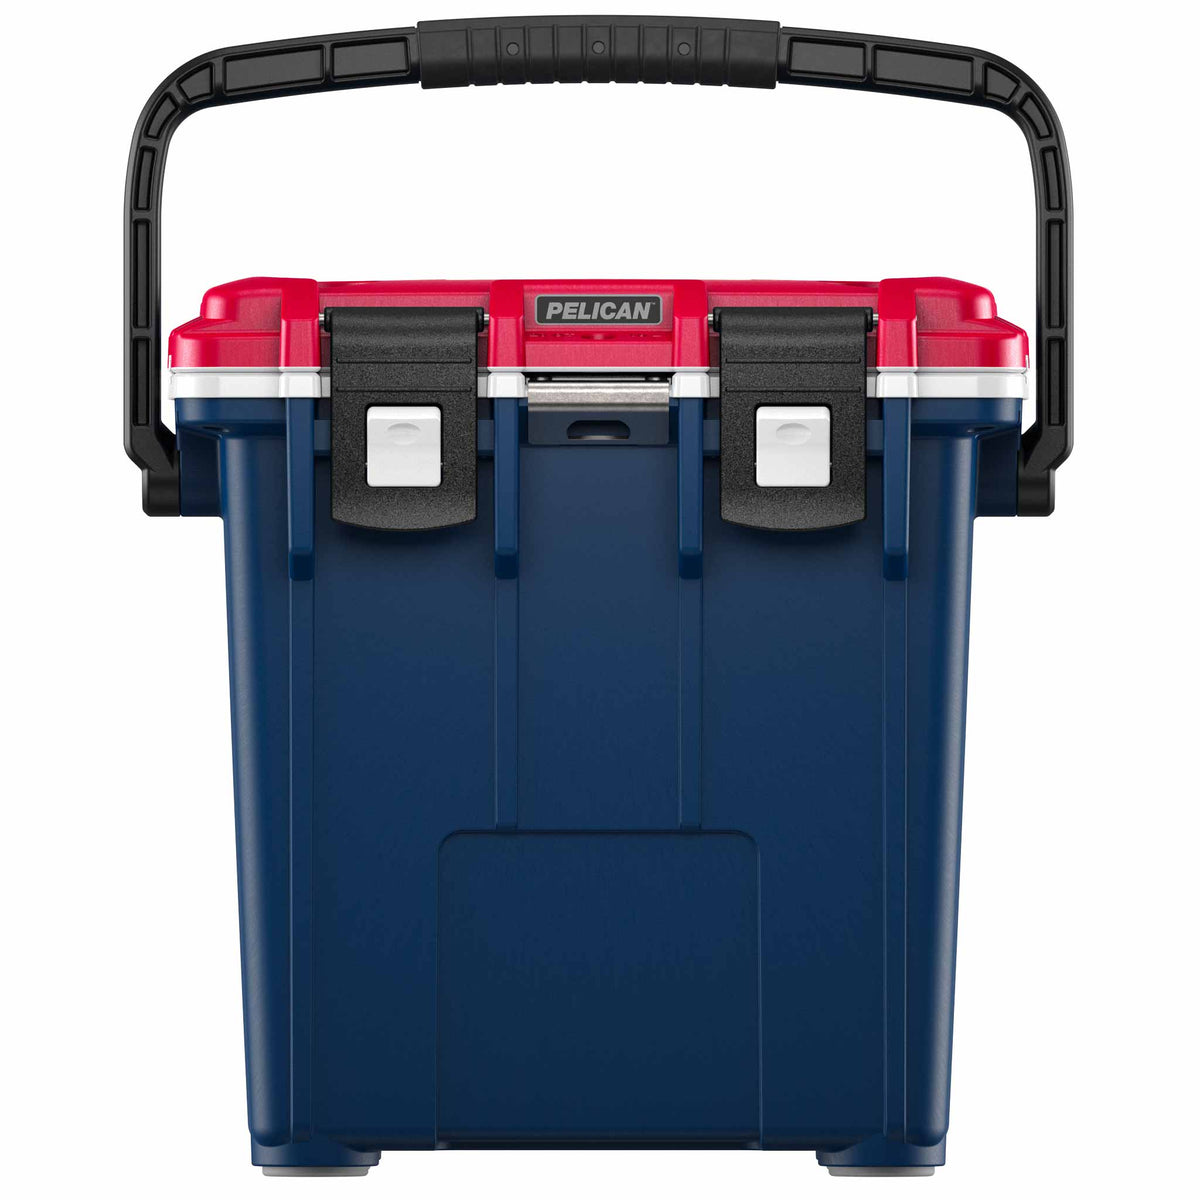 Refurbished Pelican™ 20QT Elite Cooler Cooler in Blue/White/Red